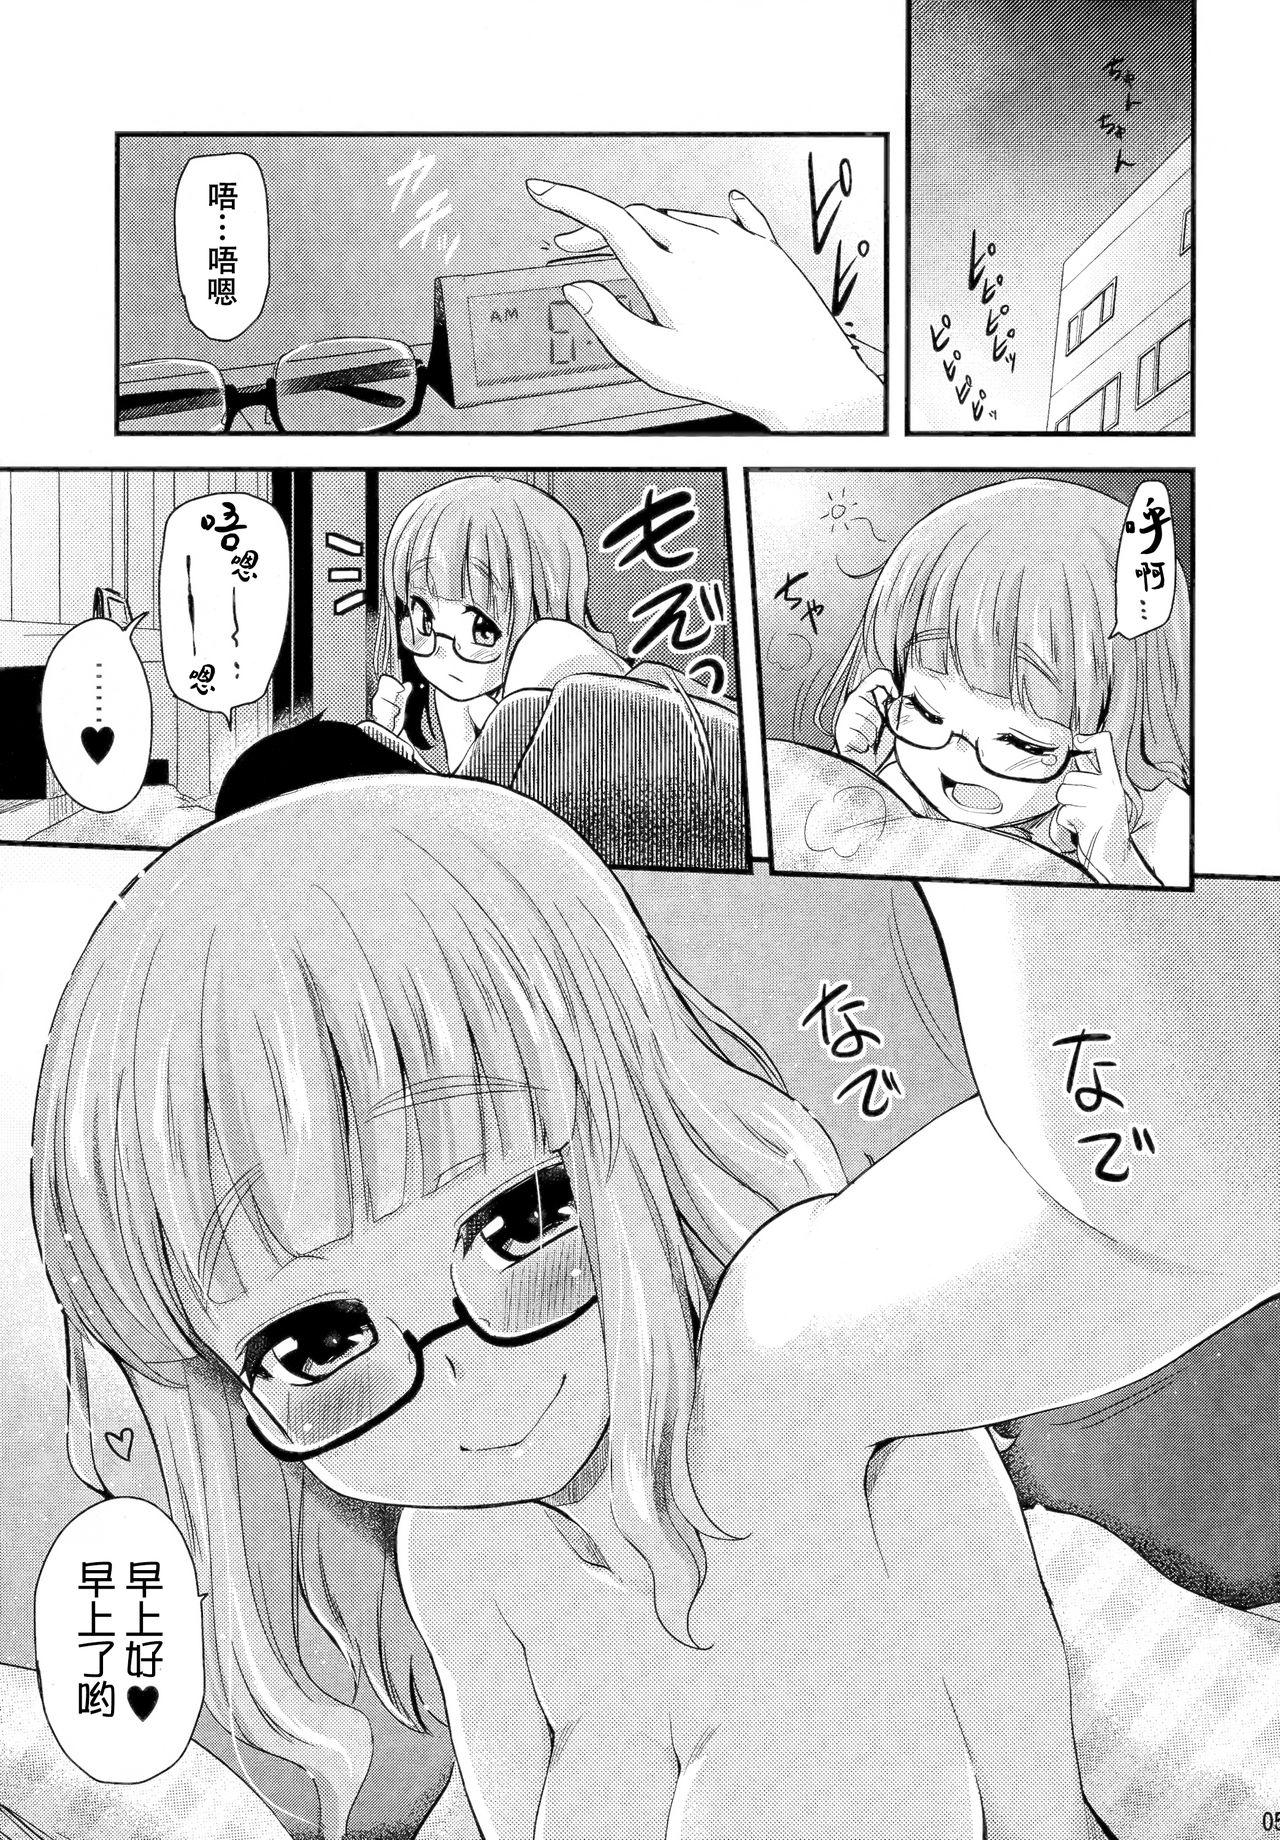 Sperm Takebe Saori-chan toiu Kanojo ga "Ohayo" to Itte Kureru Hanashi. - Girls und panzer Blowjob - Page 5